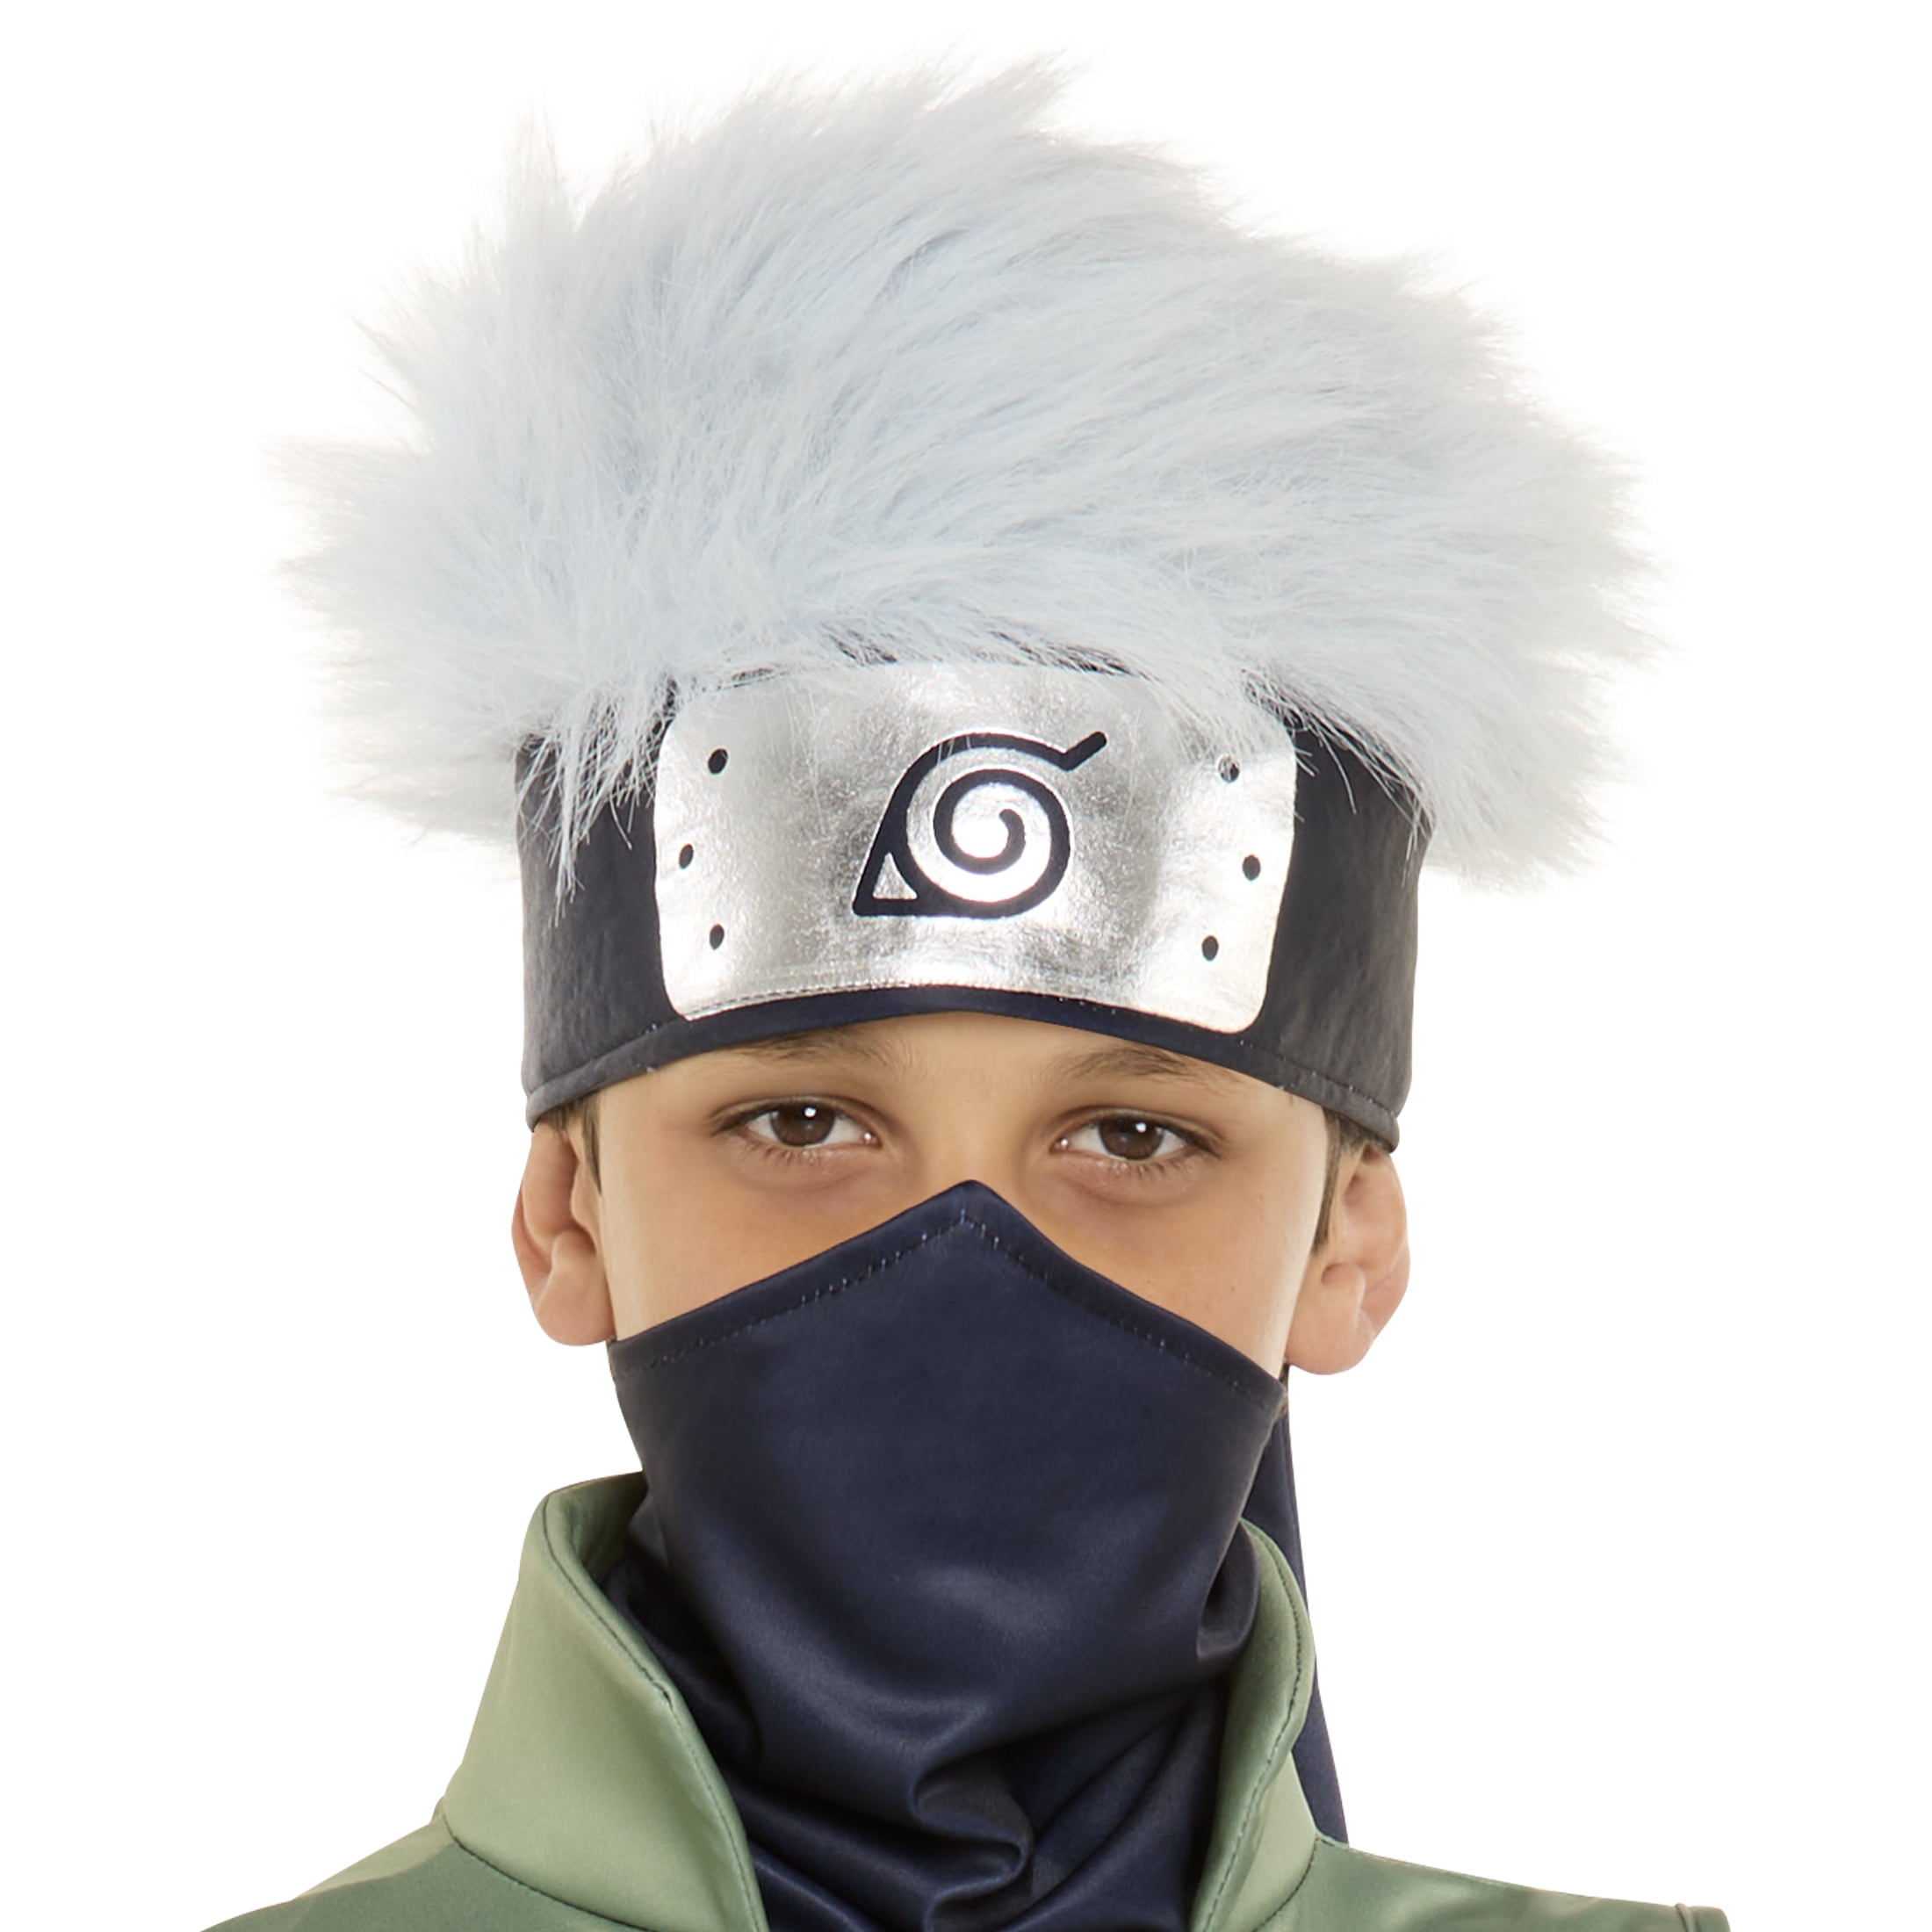 Ninja Hatake Kakashi Cosplay Mask For Sale at Miccostumes.com